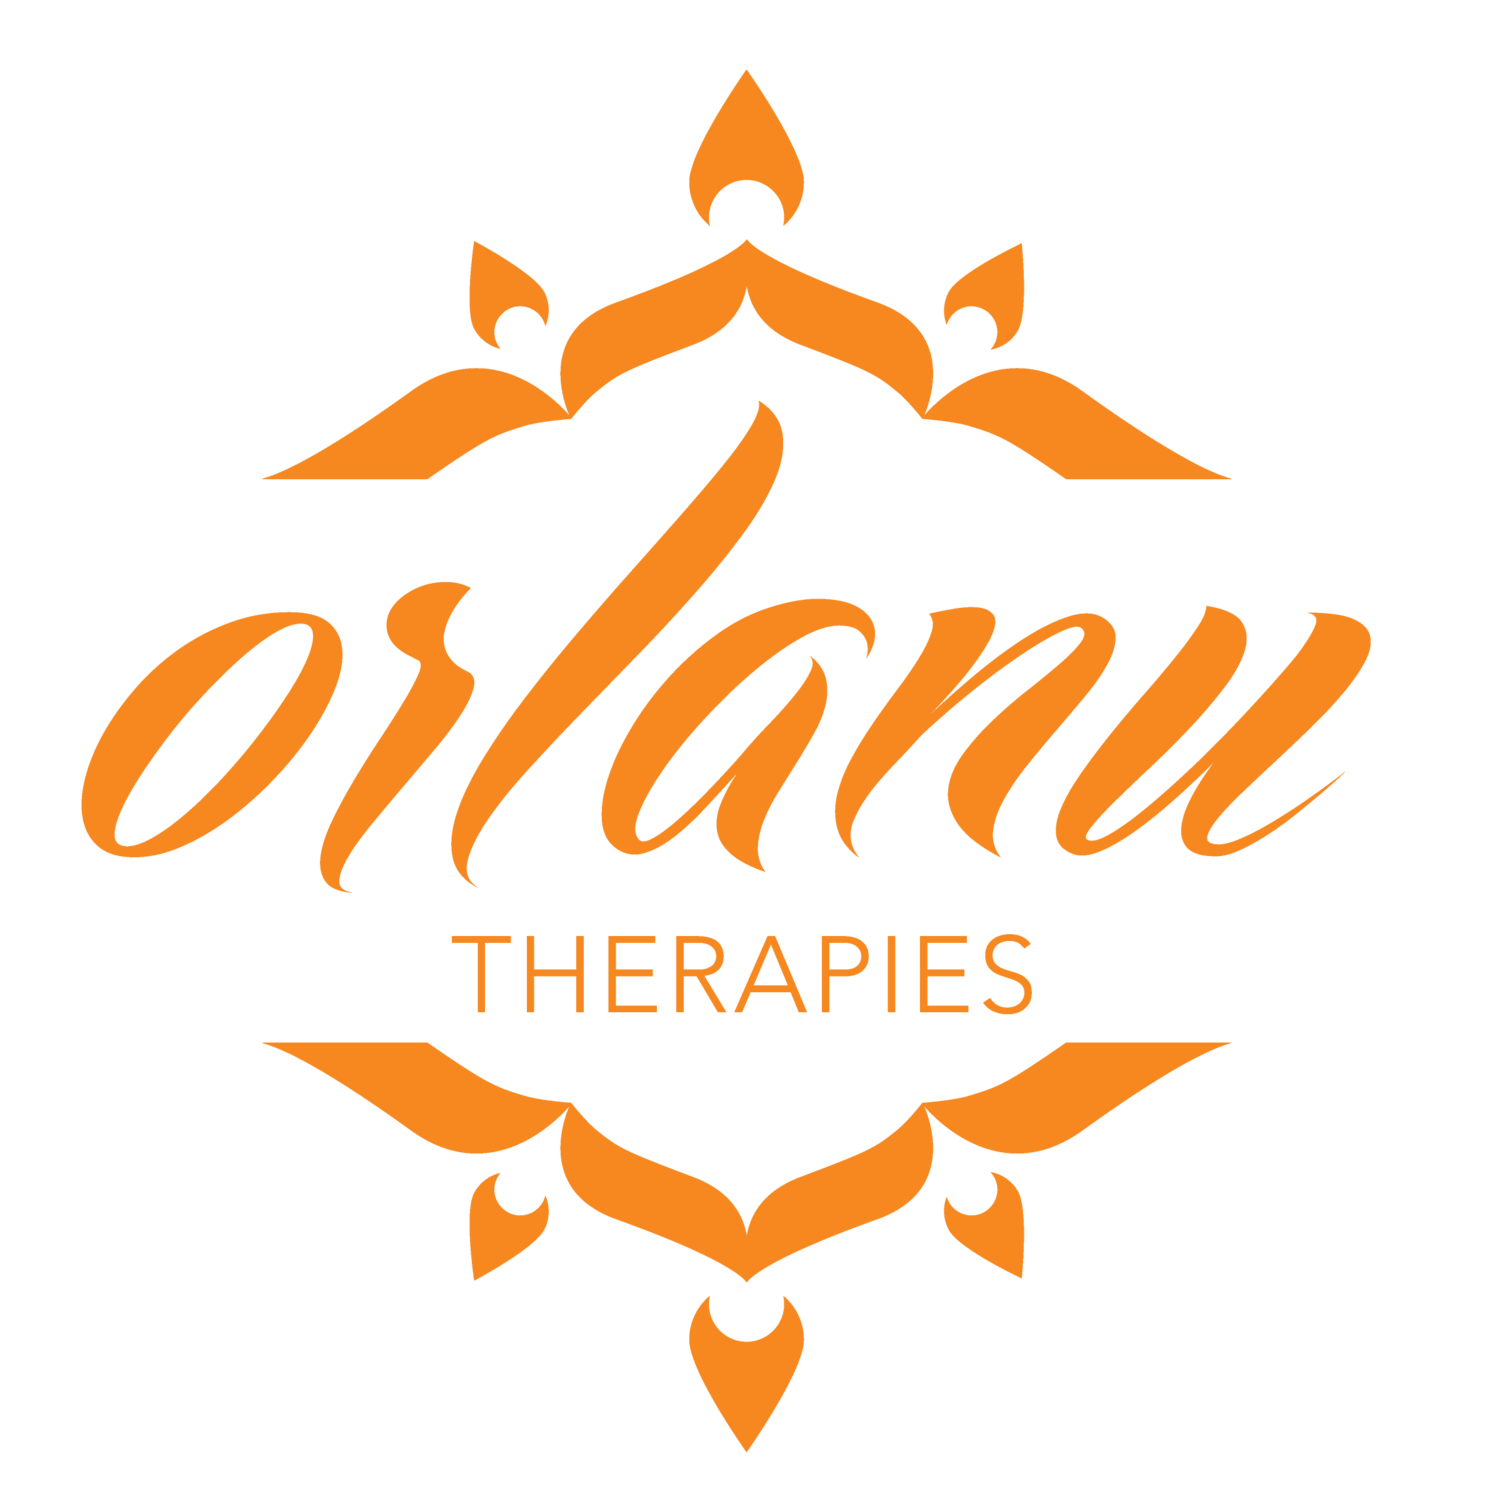 Orlanu Therapies